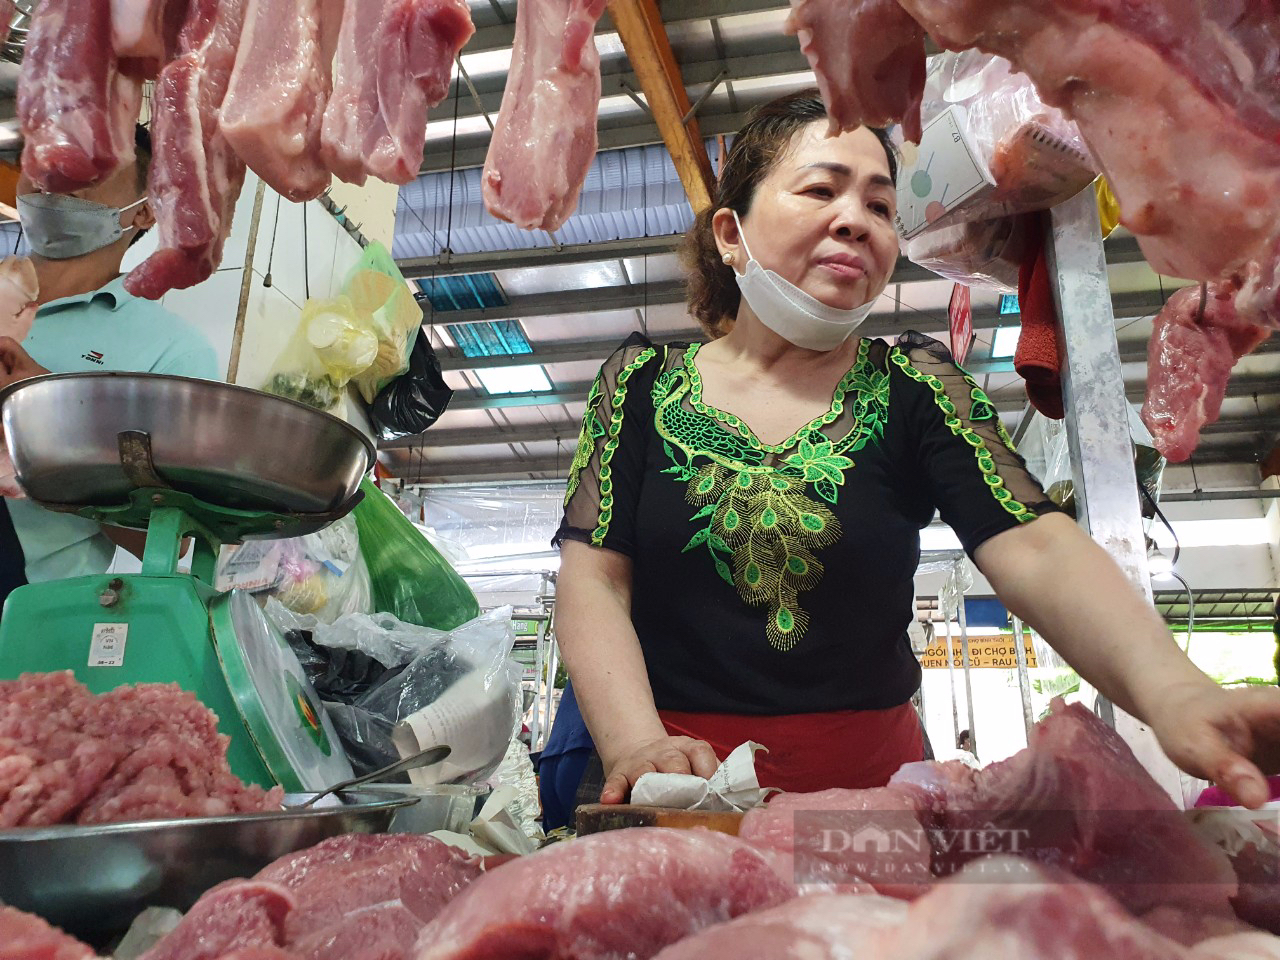 Giá thịt heo tại chợ TP.HCM tăng sốc, người mua nhăn mặt, người bán đau đầu - Ảnh 1.